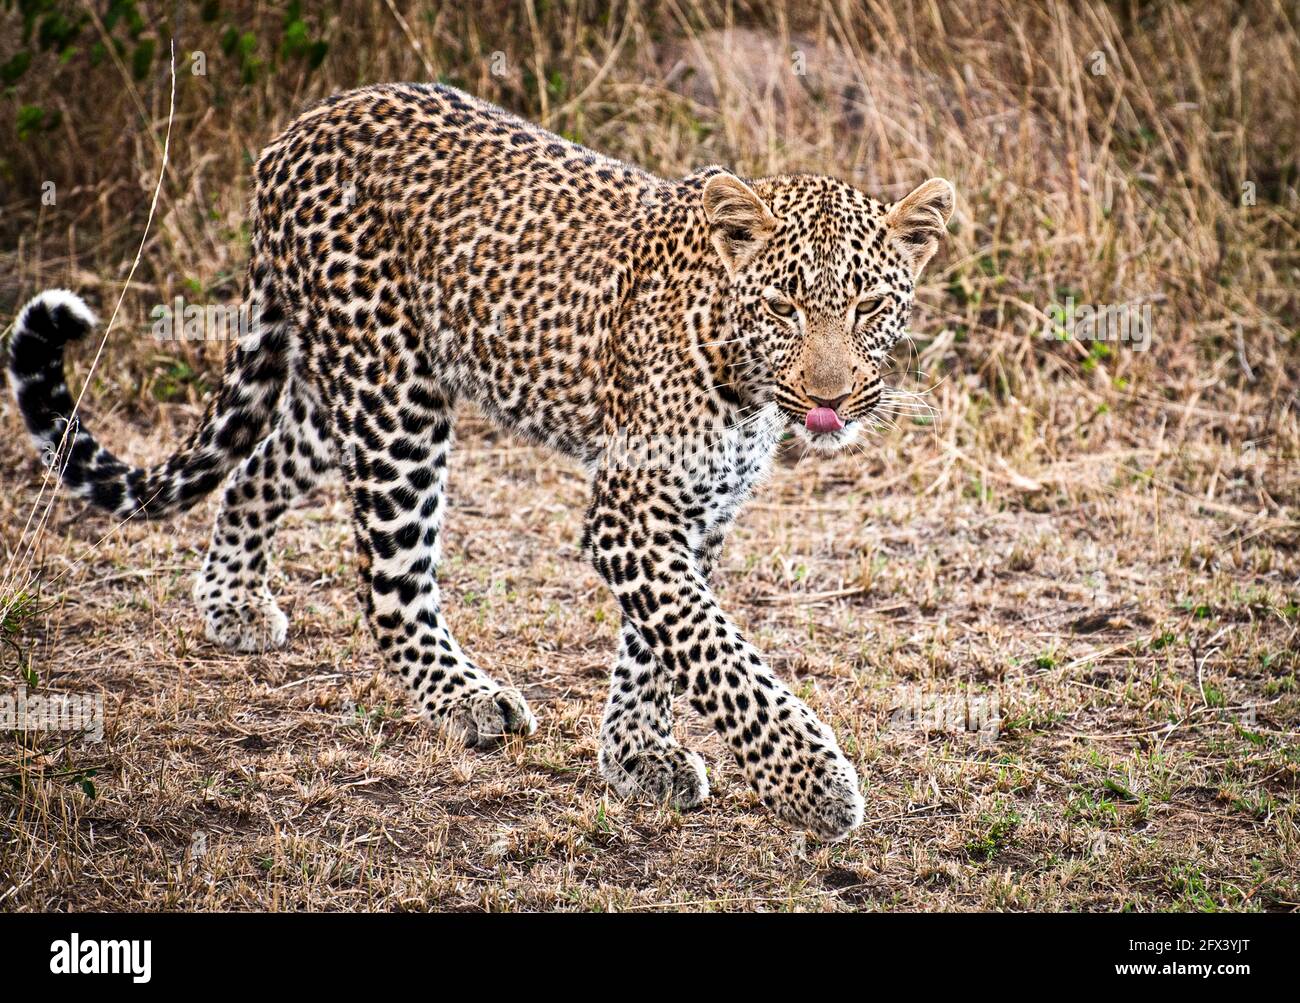 léopard marchant vers l'avant avec la langue léchant sa bouche Banque D'Images